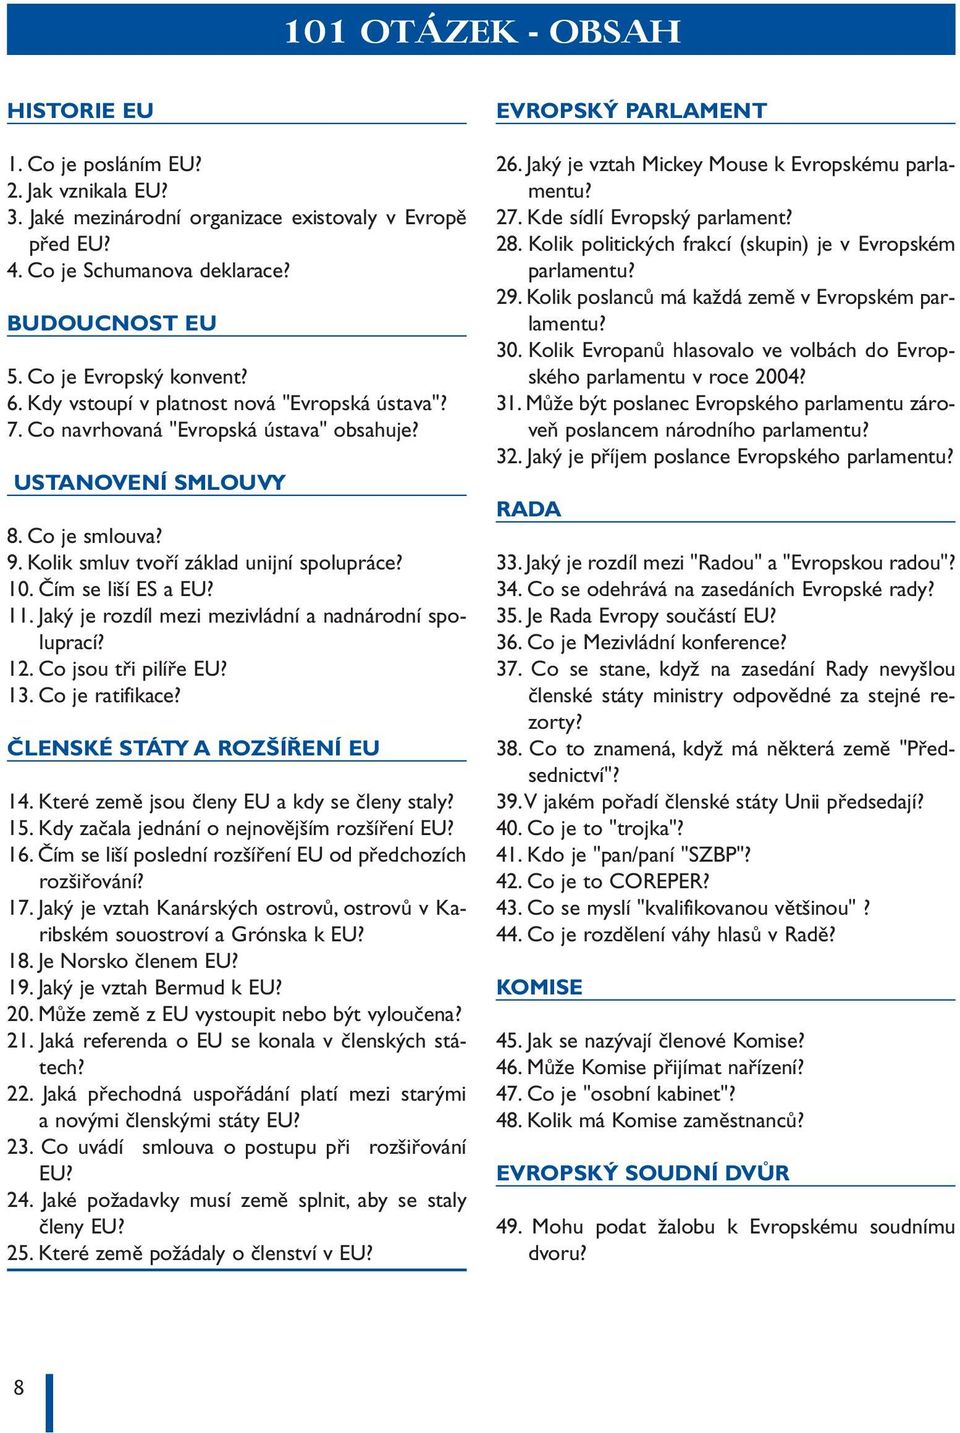 Kolik smluv tvoří základ unijní spolupráce? 10. Čím se liší ES a EU? 11. Jaký je rozdíl mezi mezivládní a nadnárodní spoluprací? 12. Co jsou tři pilíře EU? 13. Co je ratifikace?